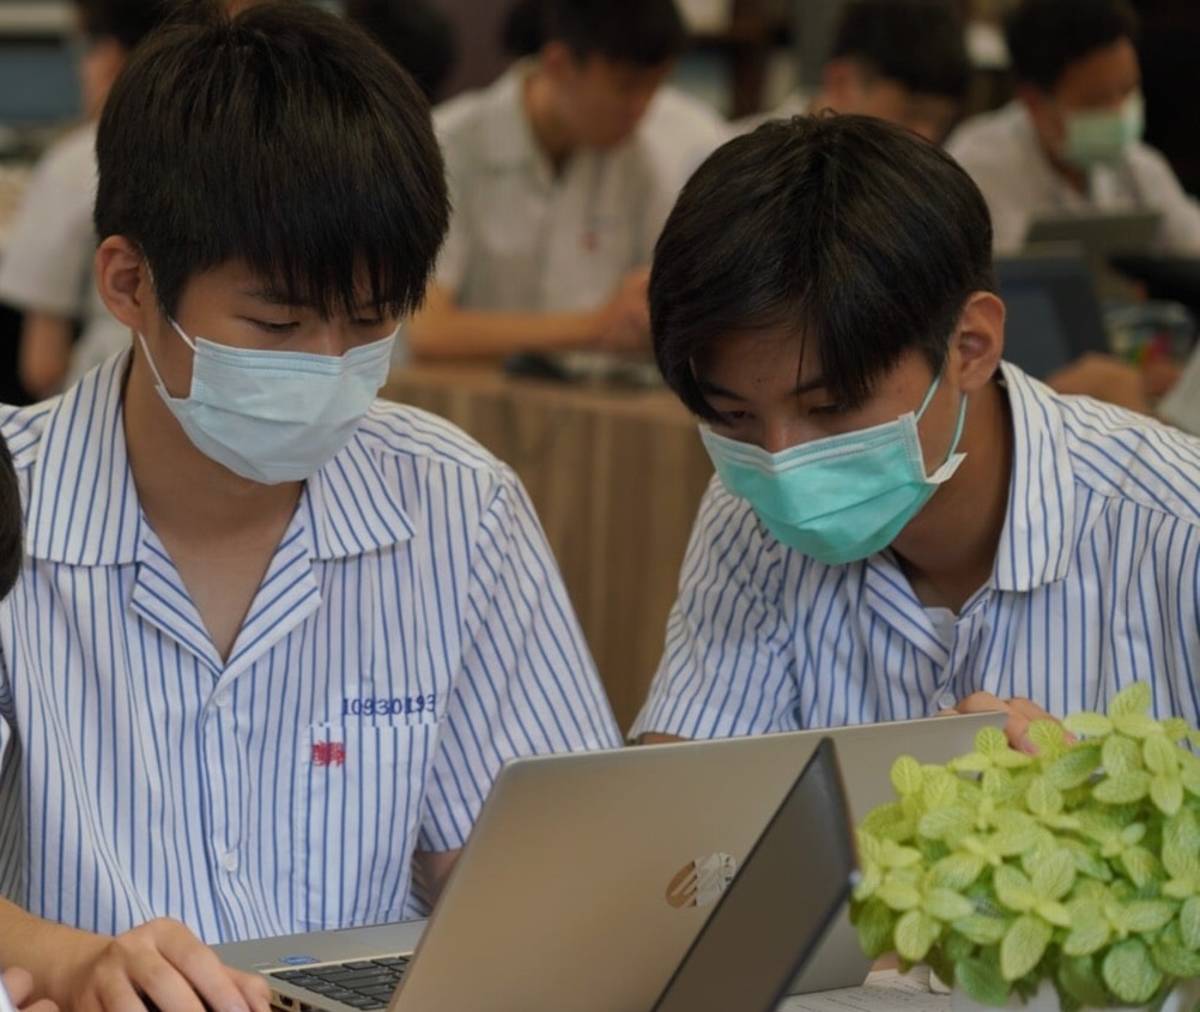 臺北市從110學年度正式推動「學生自備載具到校學習計畫」